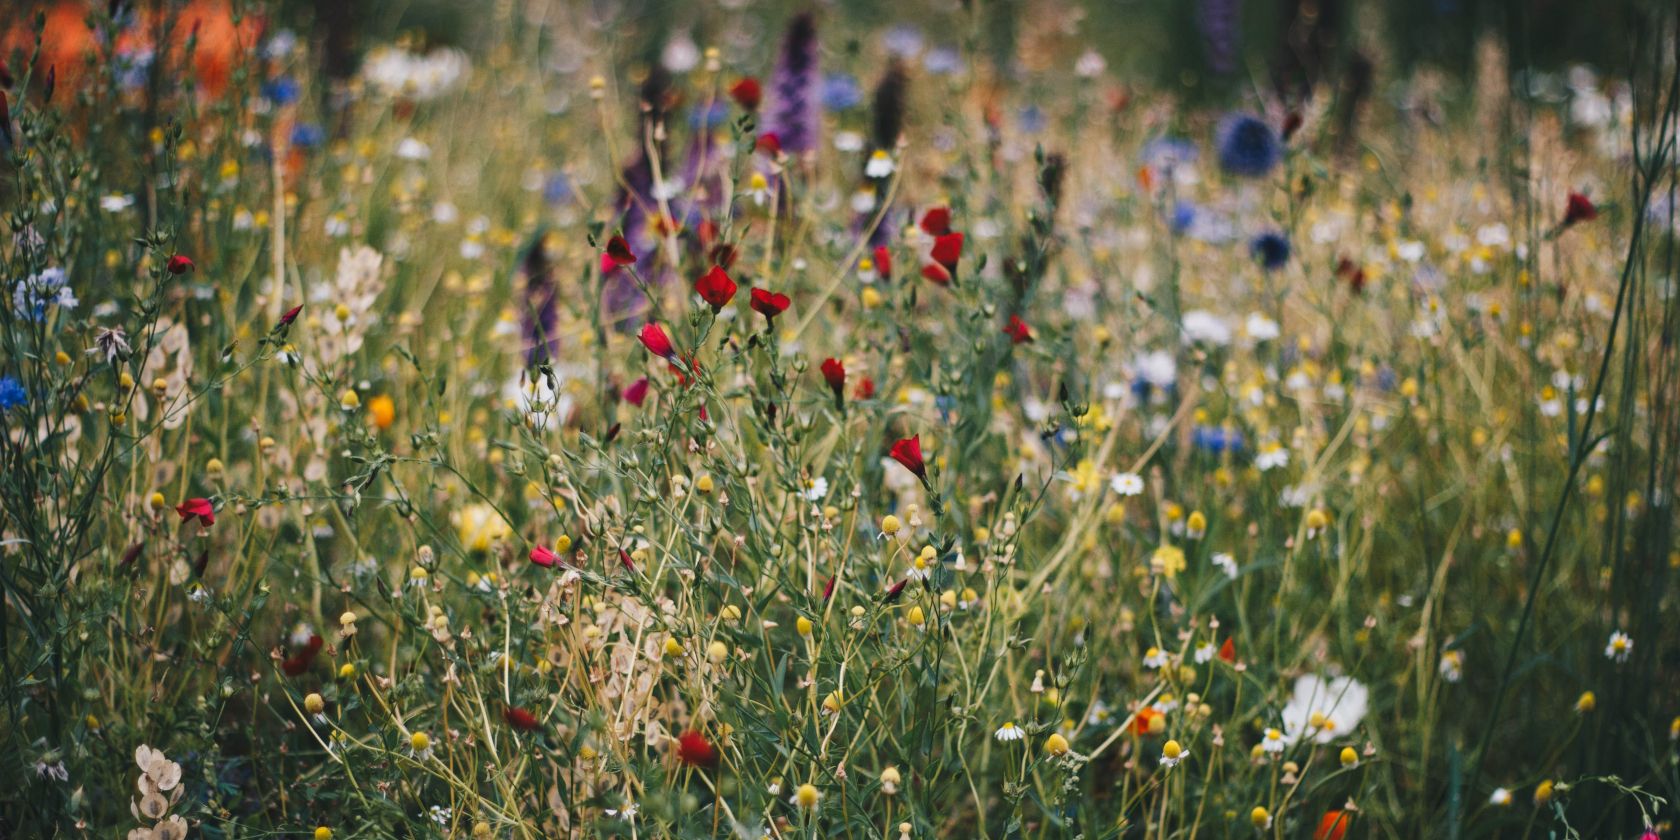 Wildflowers in a field